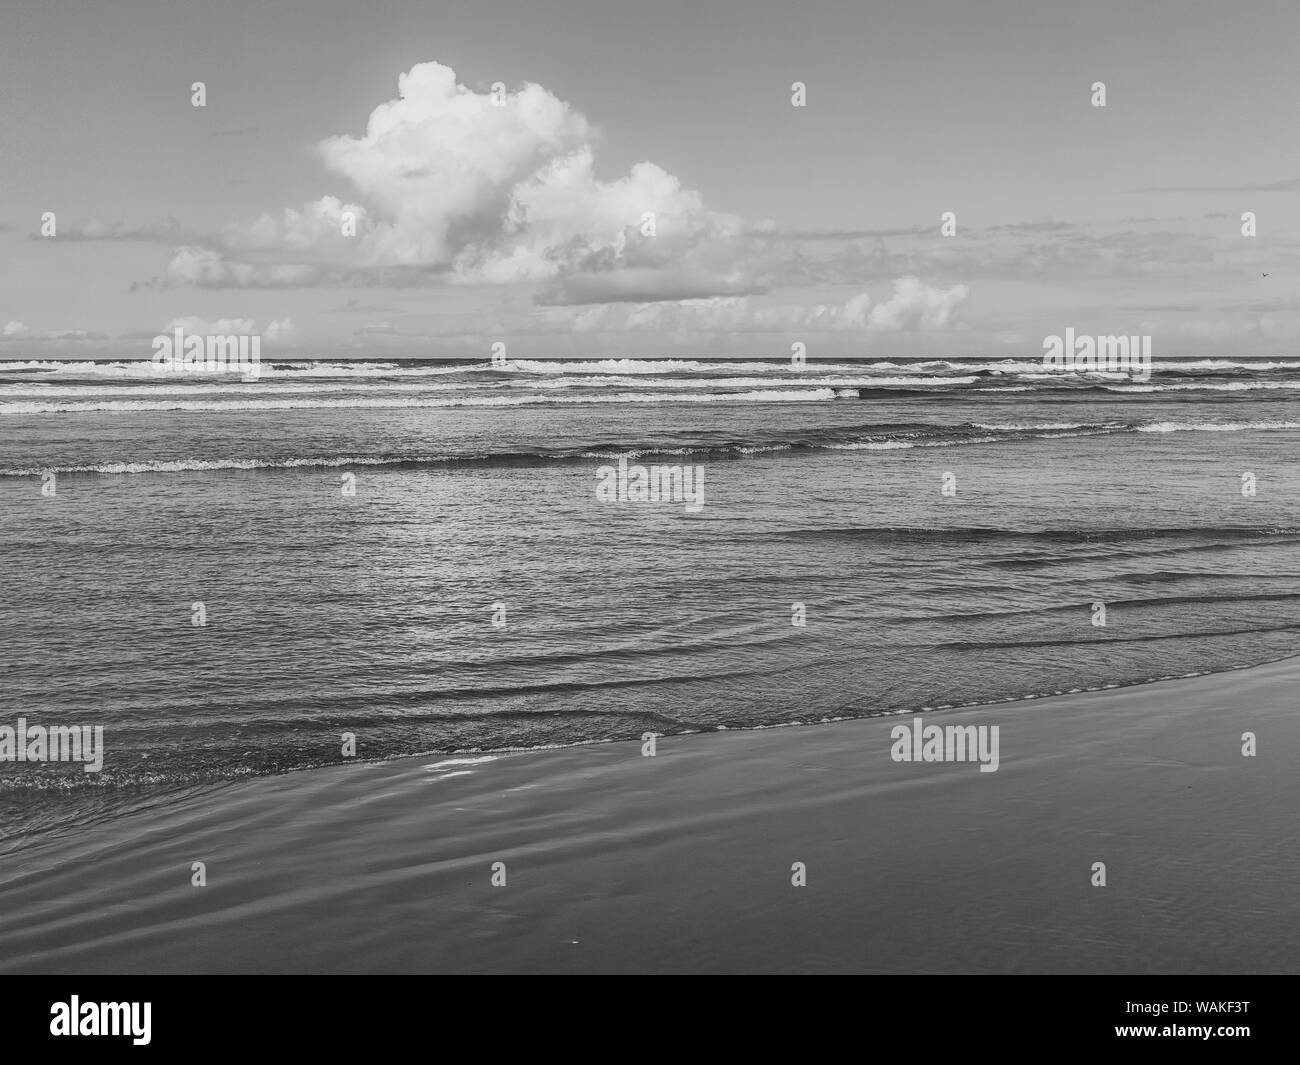 USA, Ohio, Cannon Beach. Cumulus sur l'océan en noir et blanc. En tant que crédit : Wendy Kaveney Jaynes / Galerie / DanitaDelimont.com Banque D'Images